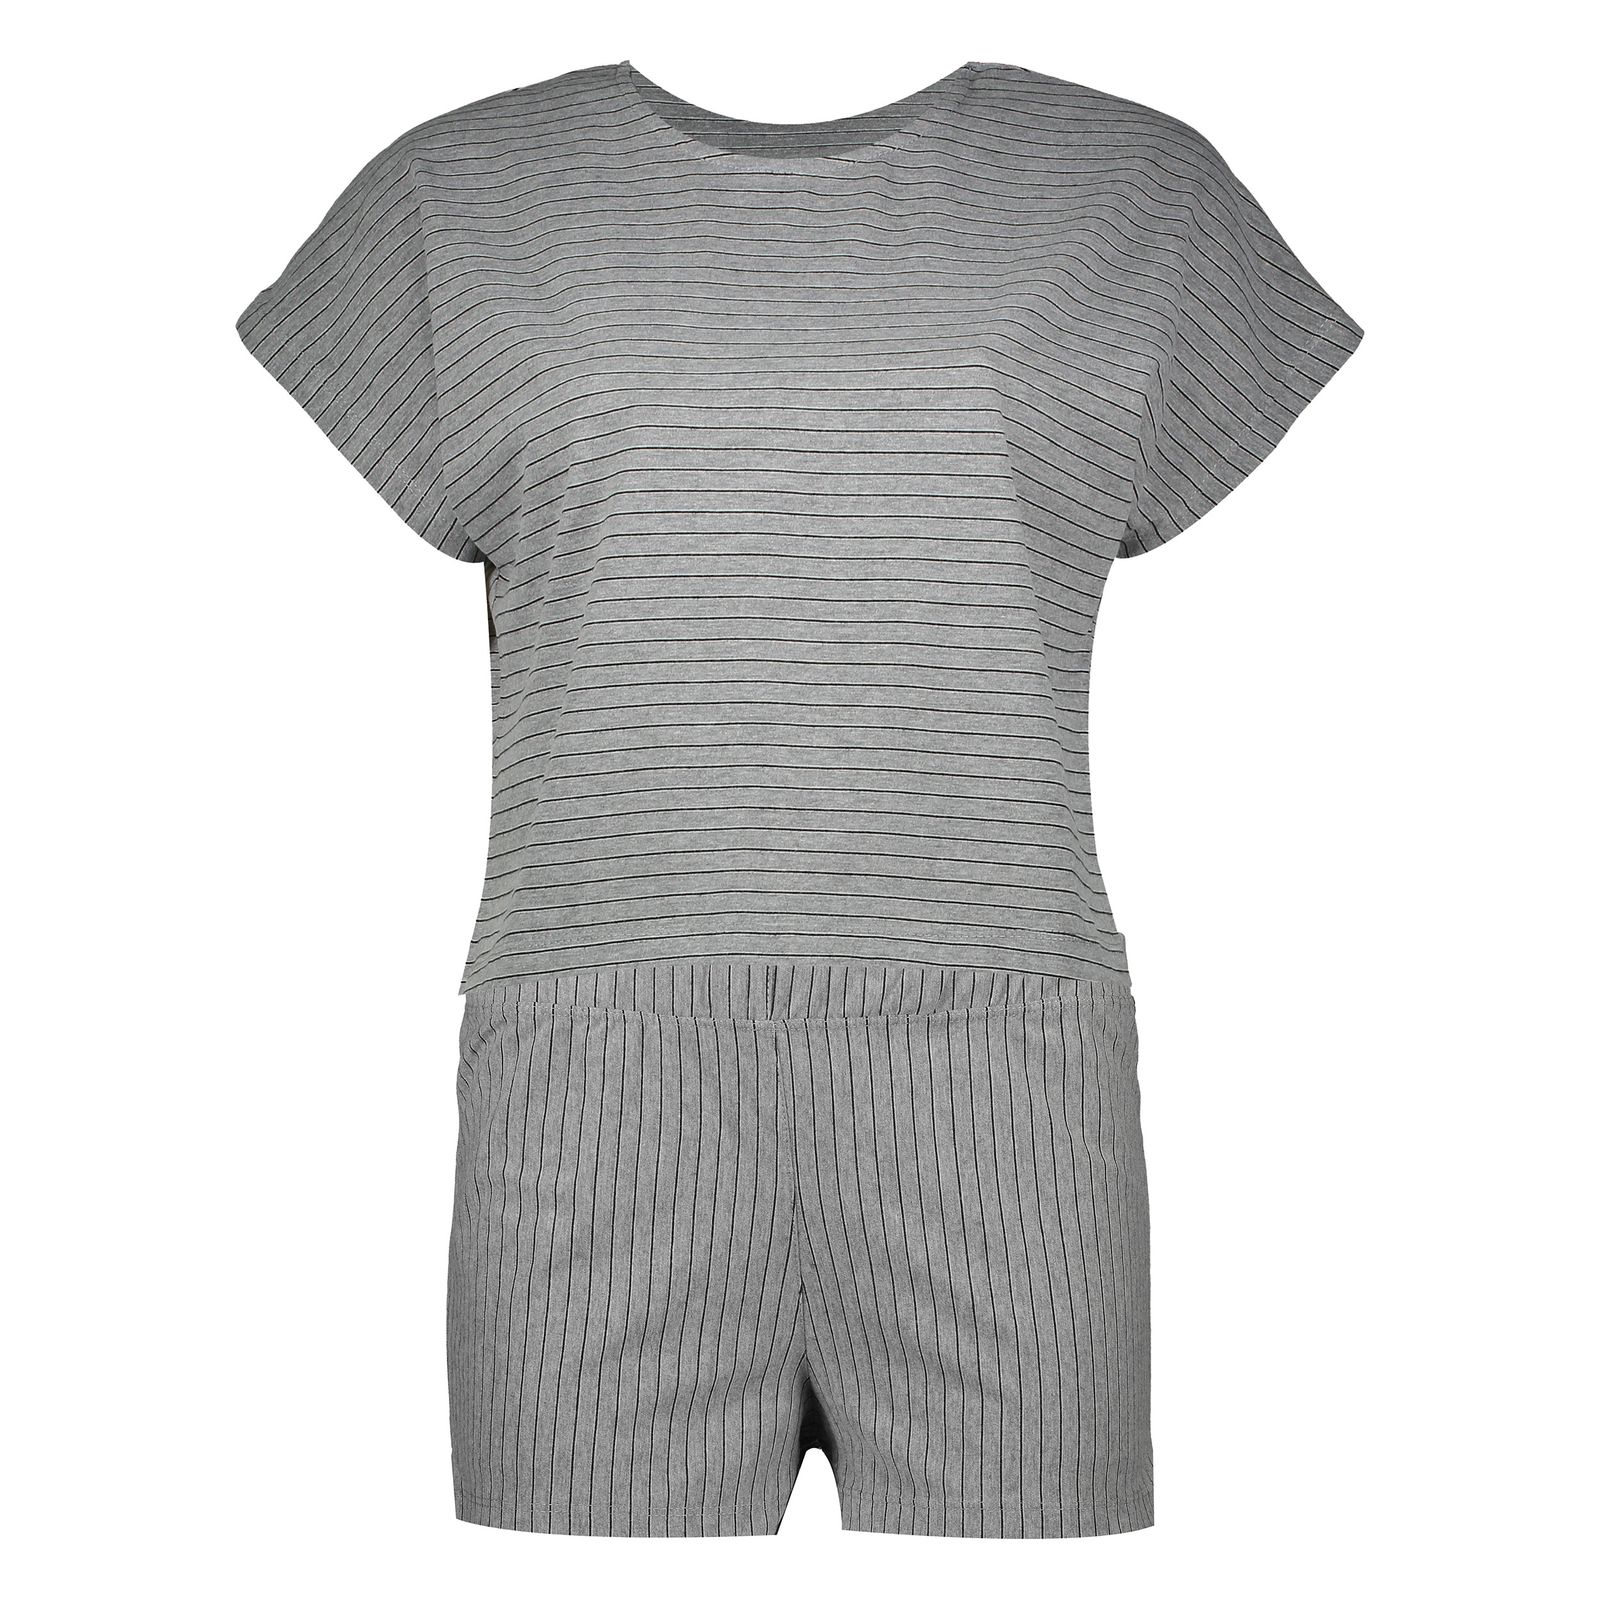 ست تی شرت و شلوارک زنانه گارودی مدل 1003214011-09 -  - 1